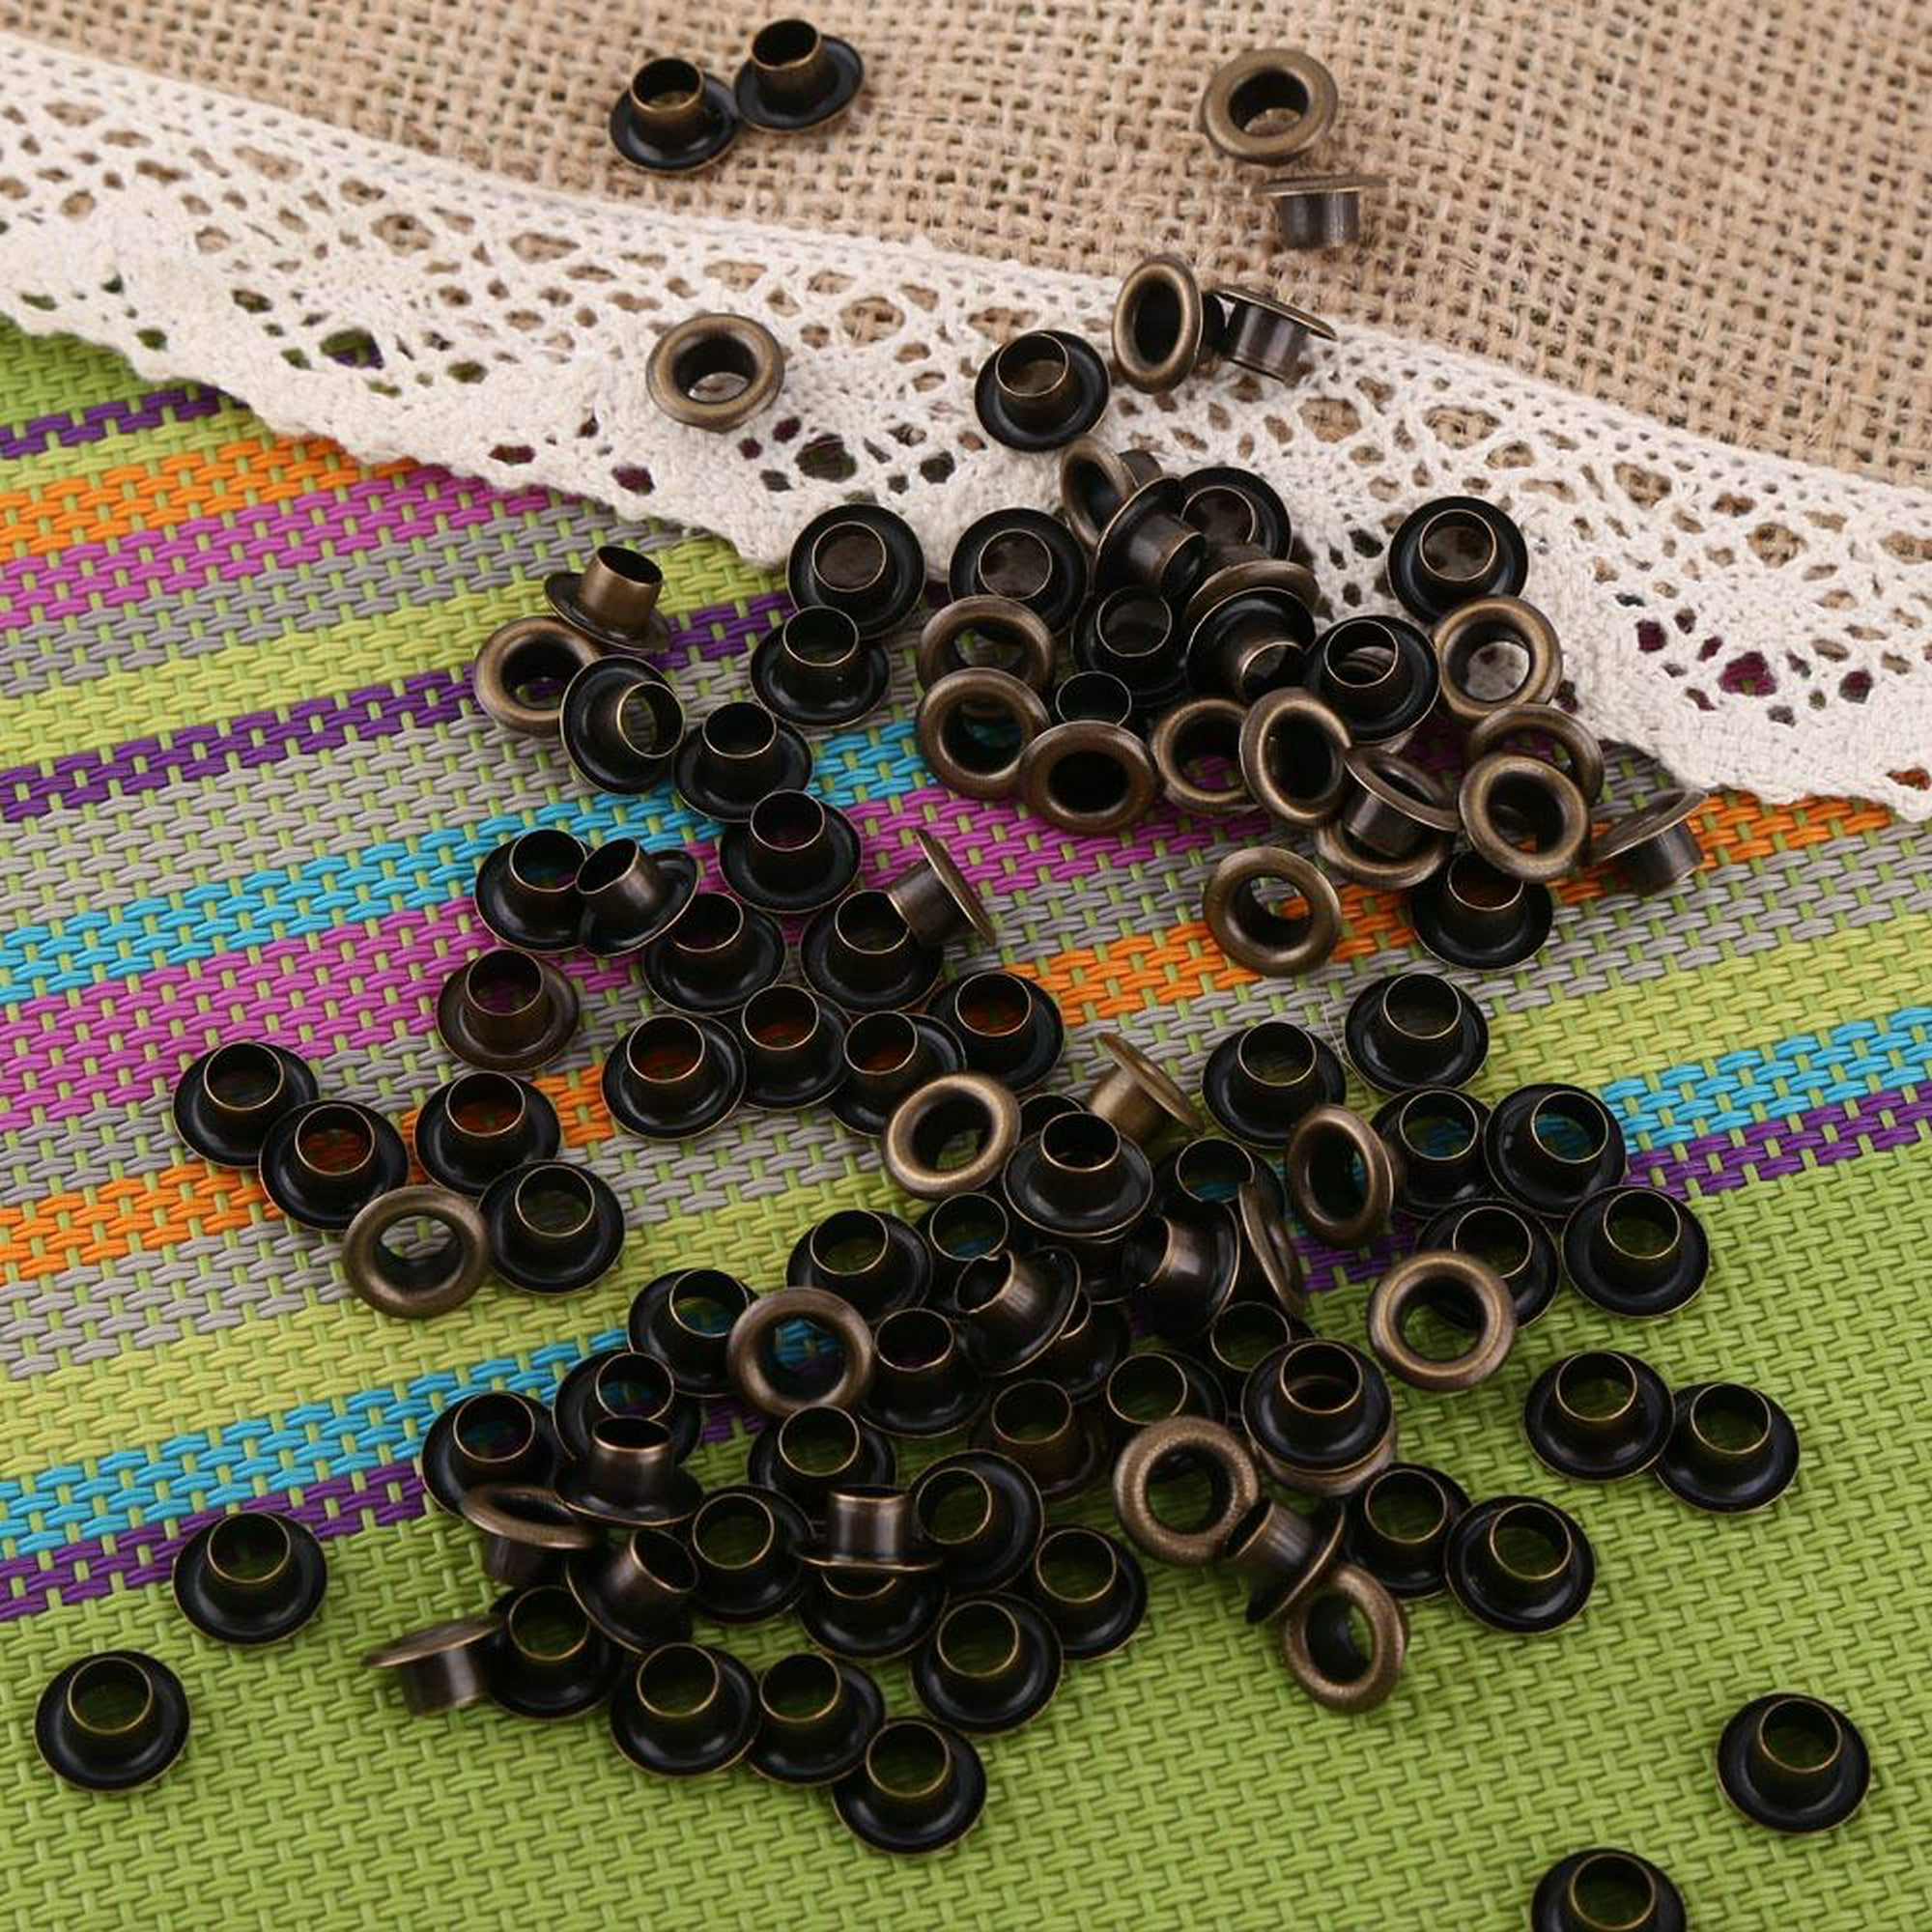 Ojetes Metálicos Ojetes Retros 100pcs Ojetes con Arandelas para Artesanía  de Cuero DIY Costura(6mm) EOTVIA NO